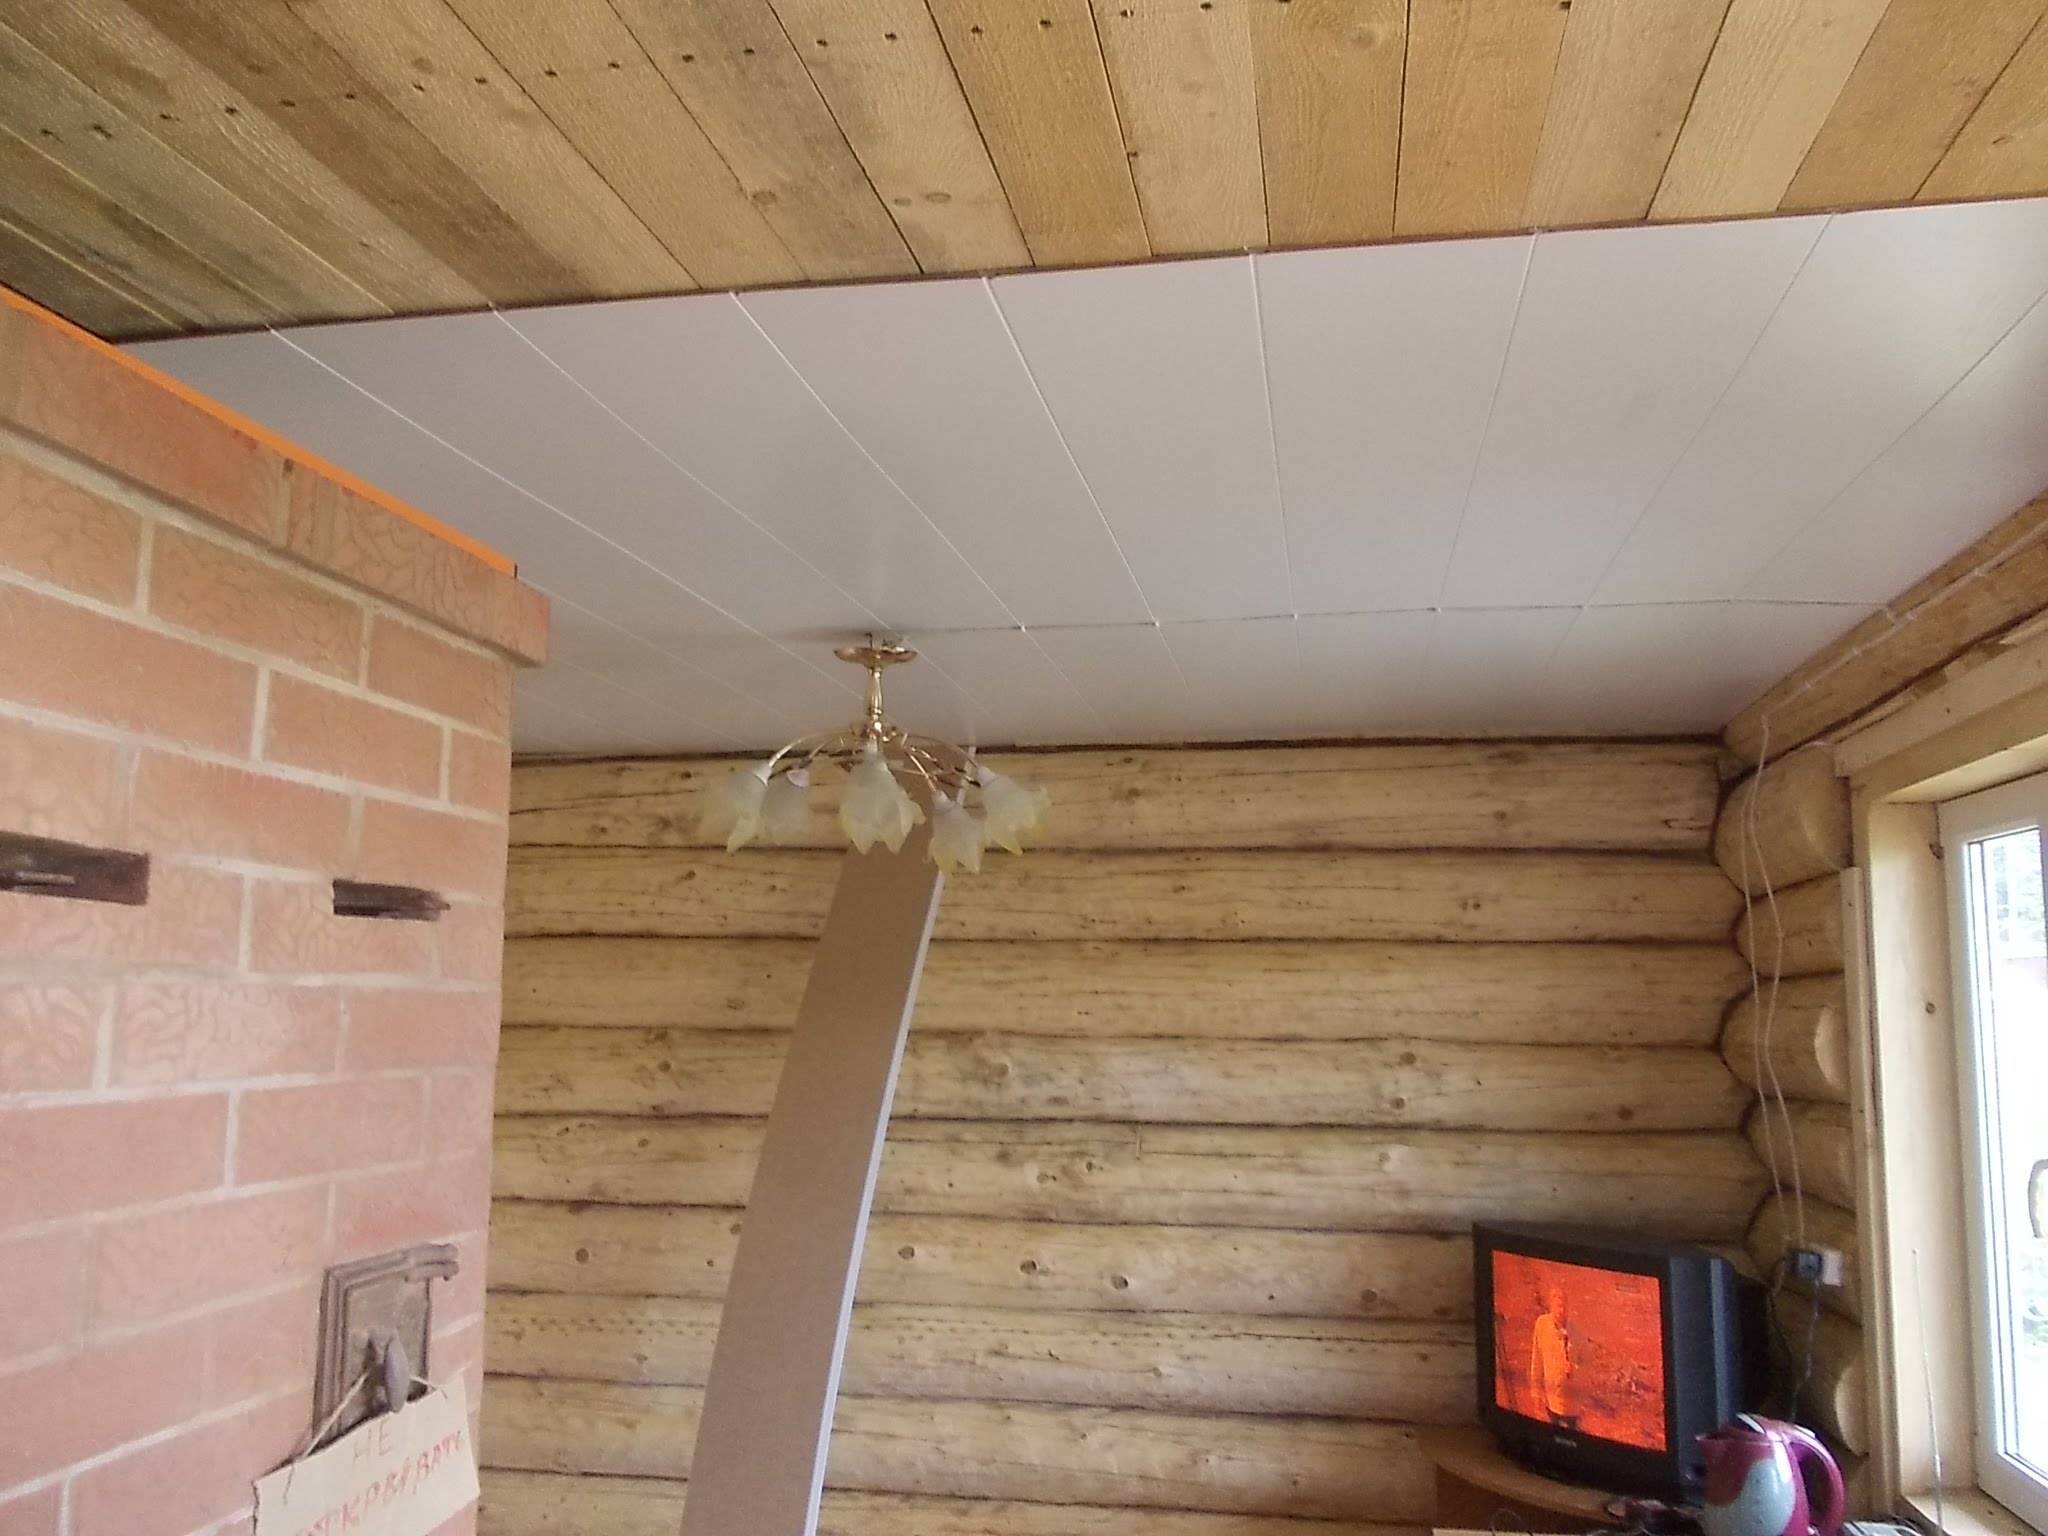 Как сделать потолок в доме: как построить потолок в частном доме своими руками, устройство подвесного потолка, из чего лучше сделать, материалы